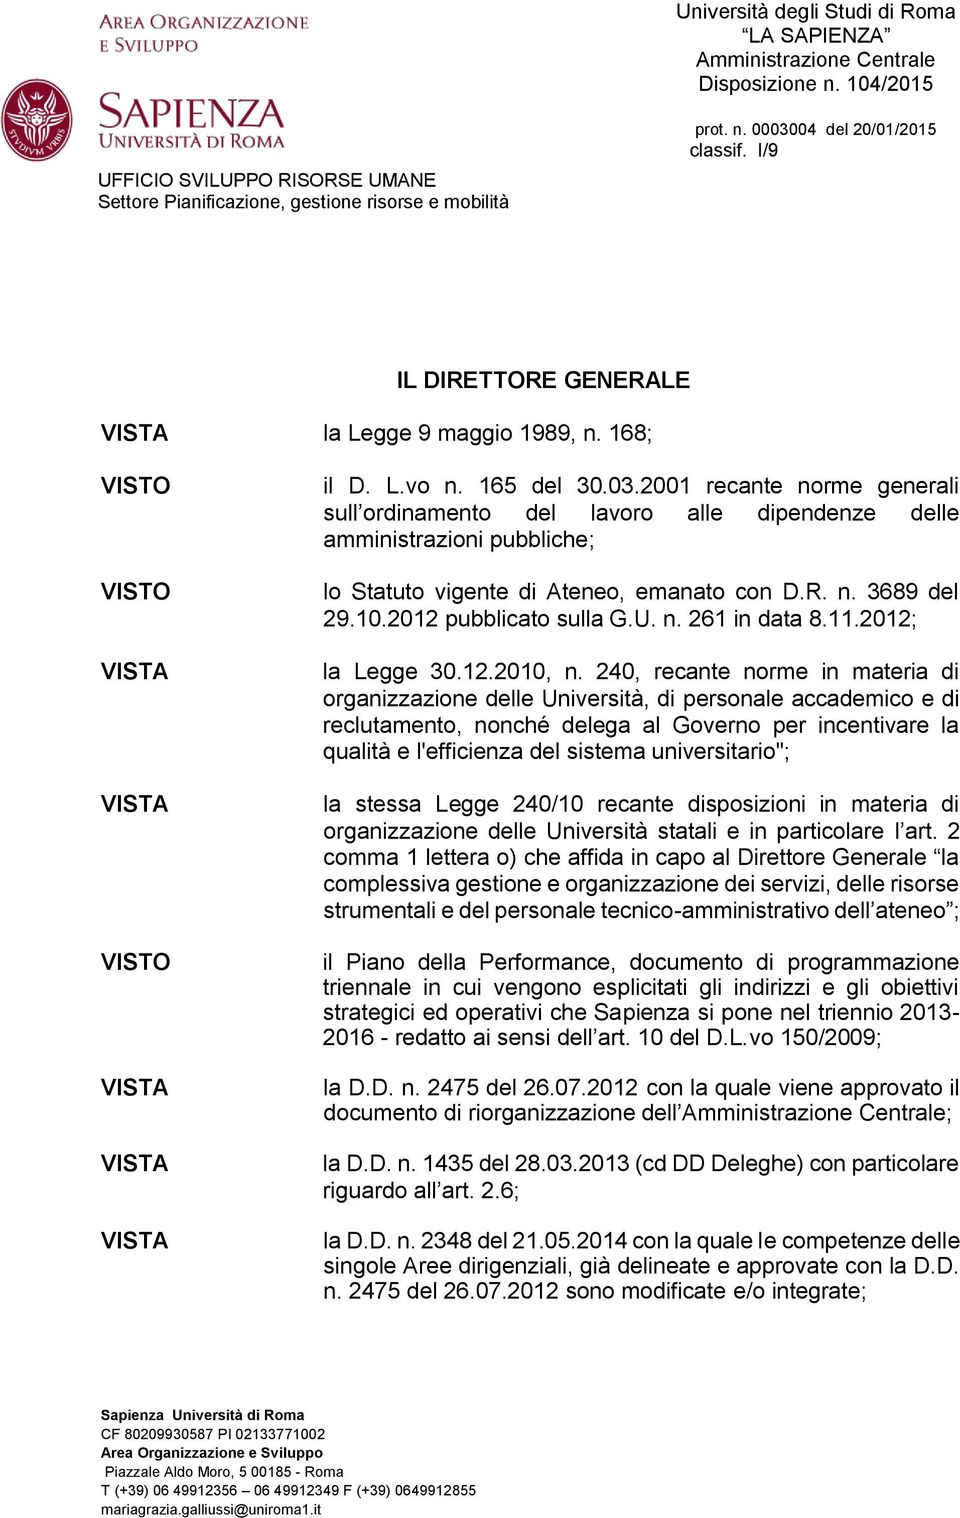 2001 recante norme generali sull ordinamento del lavoro alle dipendenze delle amministrazioni pubbliche; lo Statuto vigente di Ateneo, emanato con D.R. n. 3689 del 29.10.2012 pubblicato sulla G.U. n. 261 in data 8.